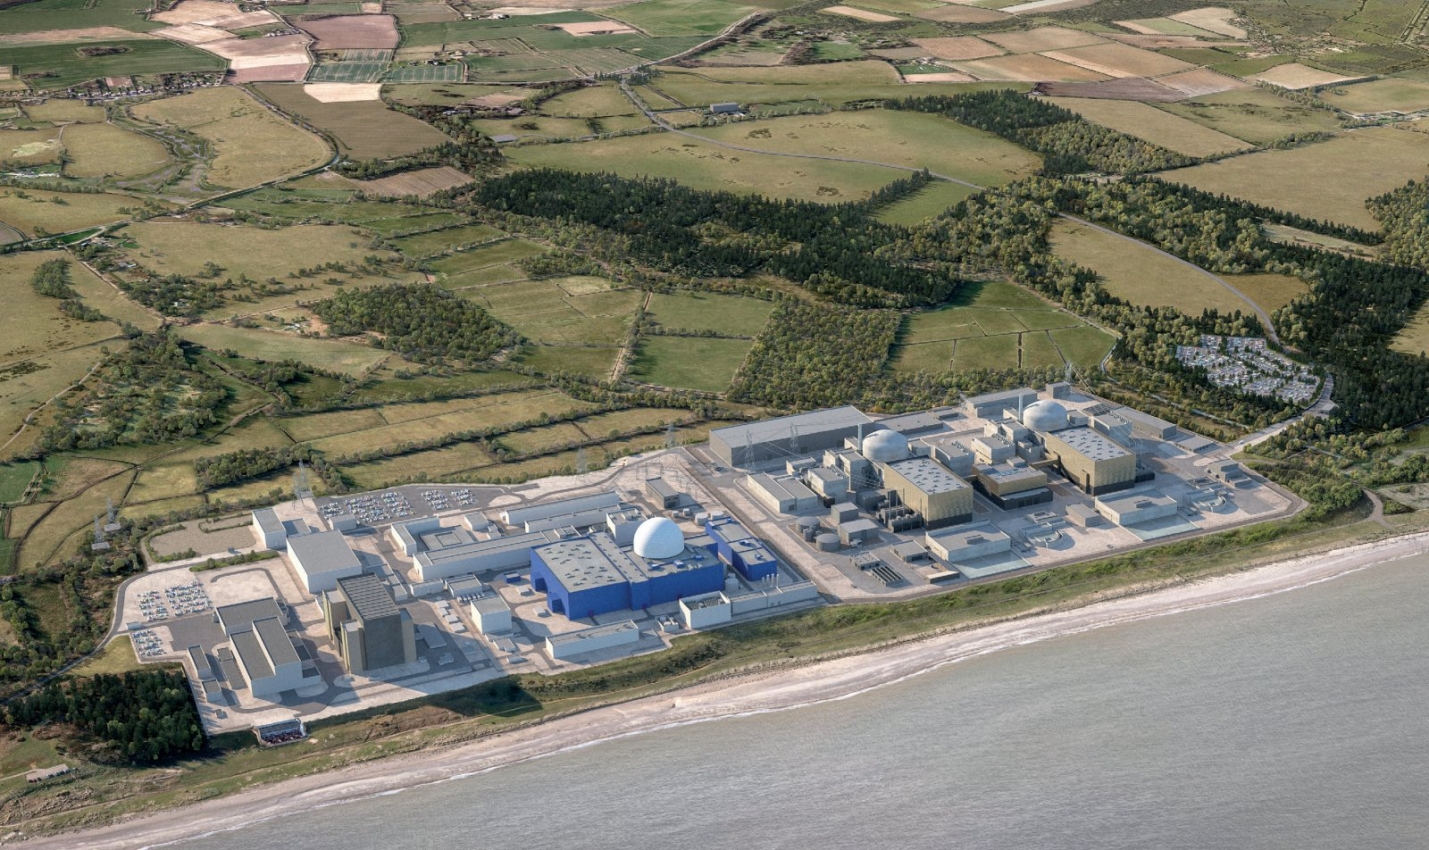 Das geplante Kernkraftwerk Sizewell C erhält von der britischen Regierung eine finanzielle Unterstützung von bis zu GBP 1,7 Mrd.